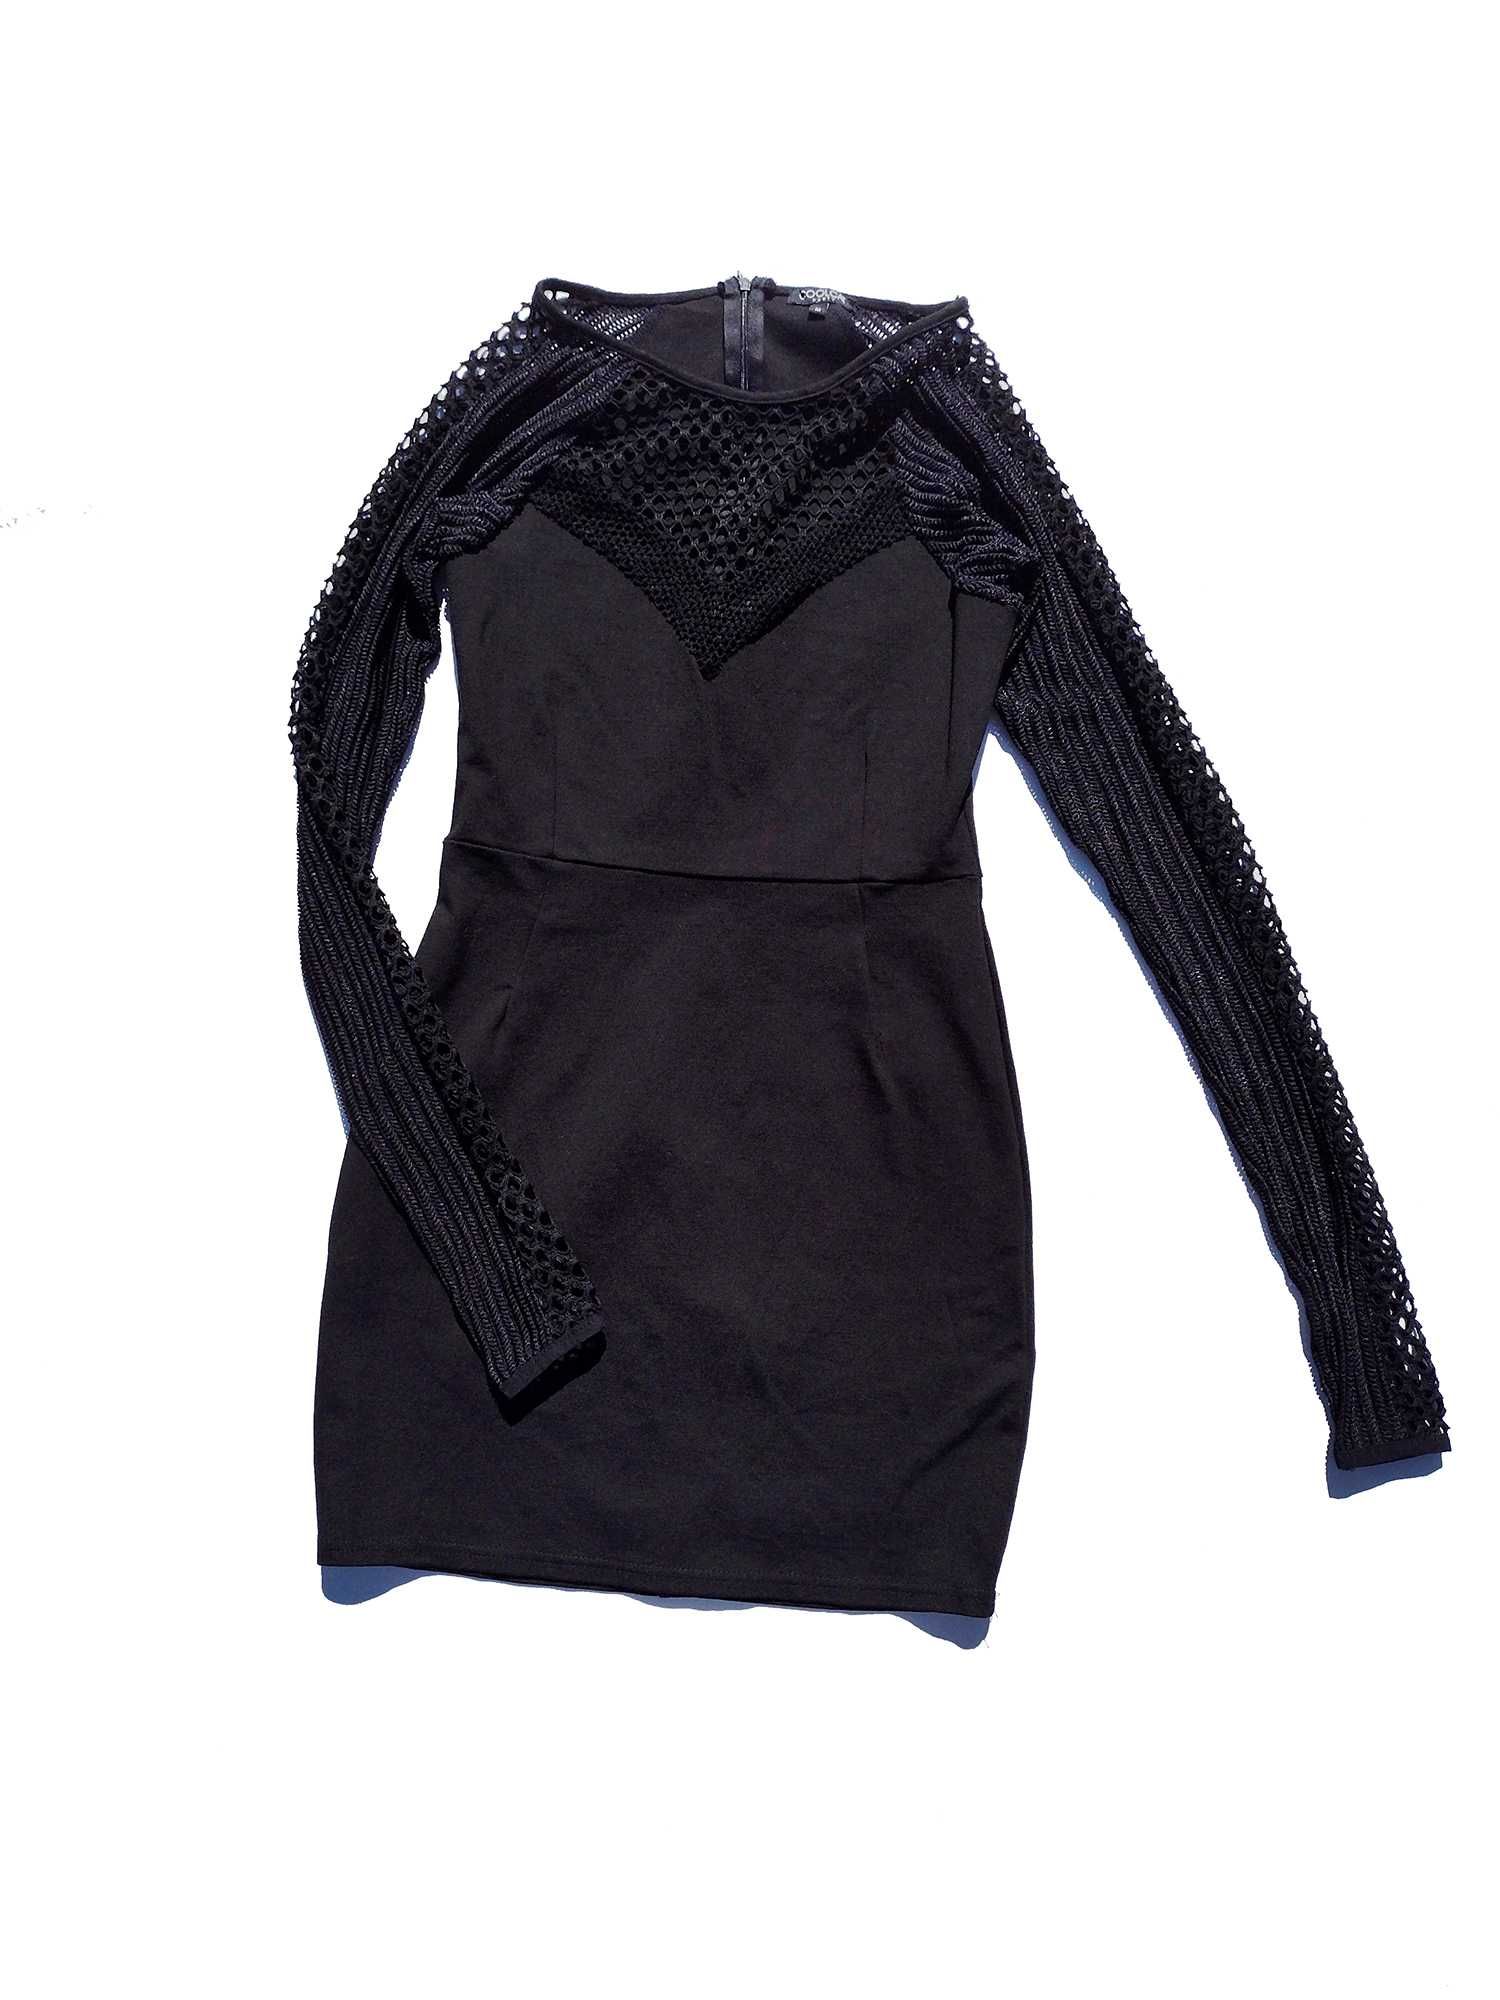 Привлекательное обтягивающее чёрное платье с сеткой Coolcat р S M